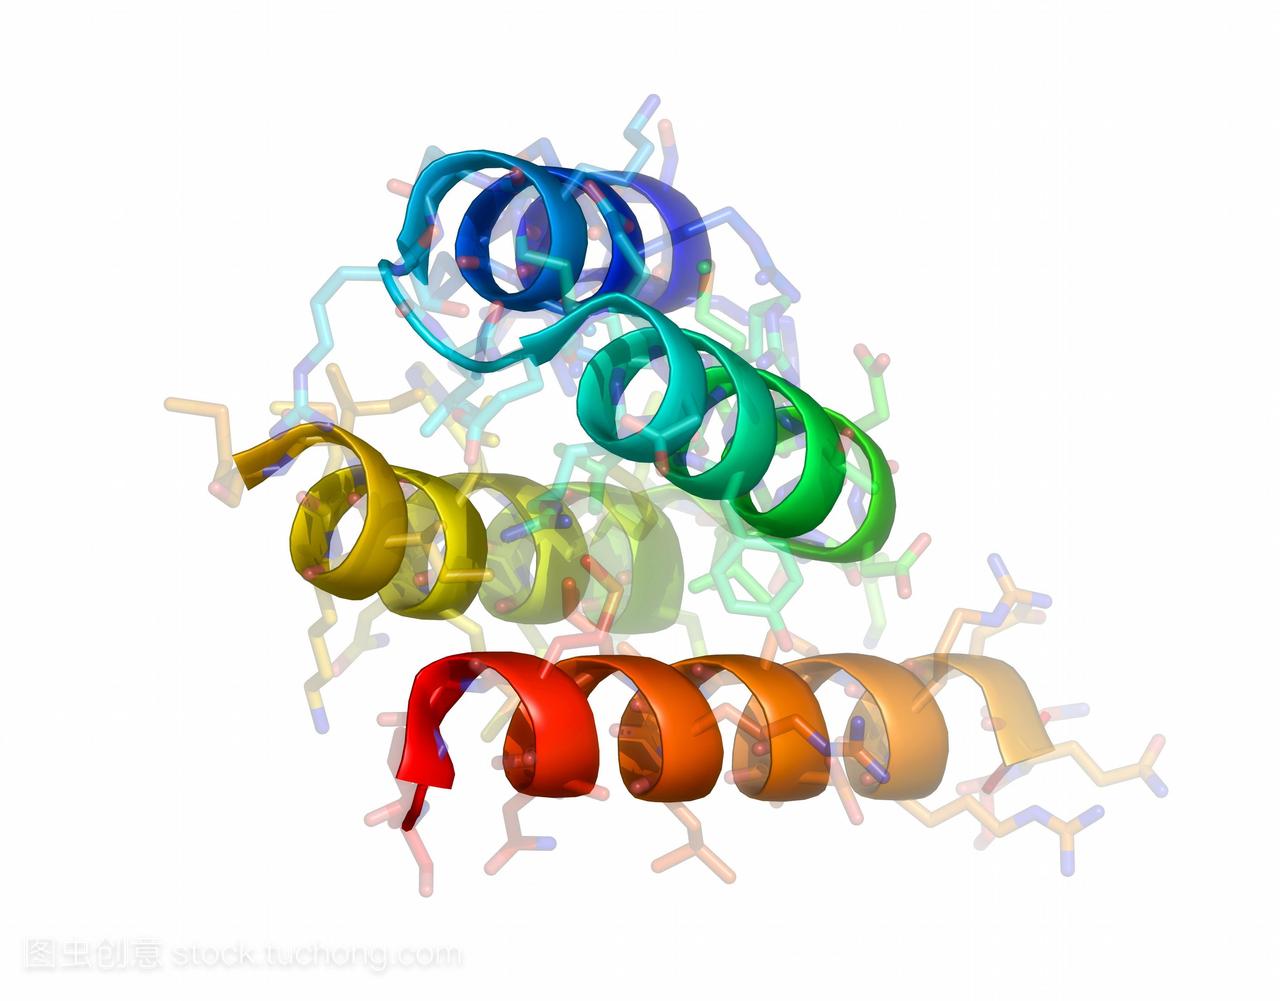 麻疹病毒的蛋白分子模型。病毒的一个域是P蛋